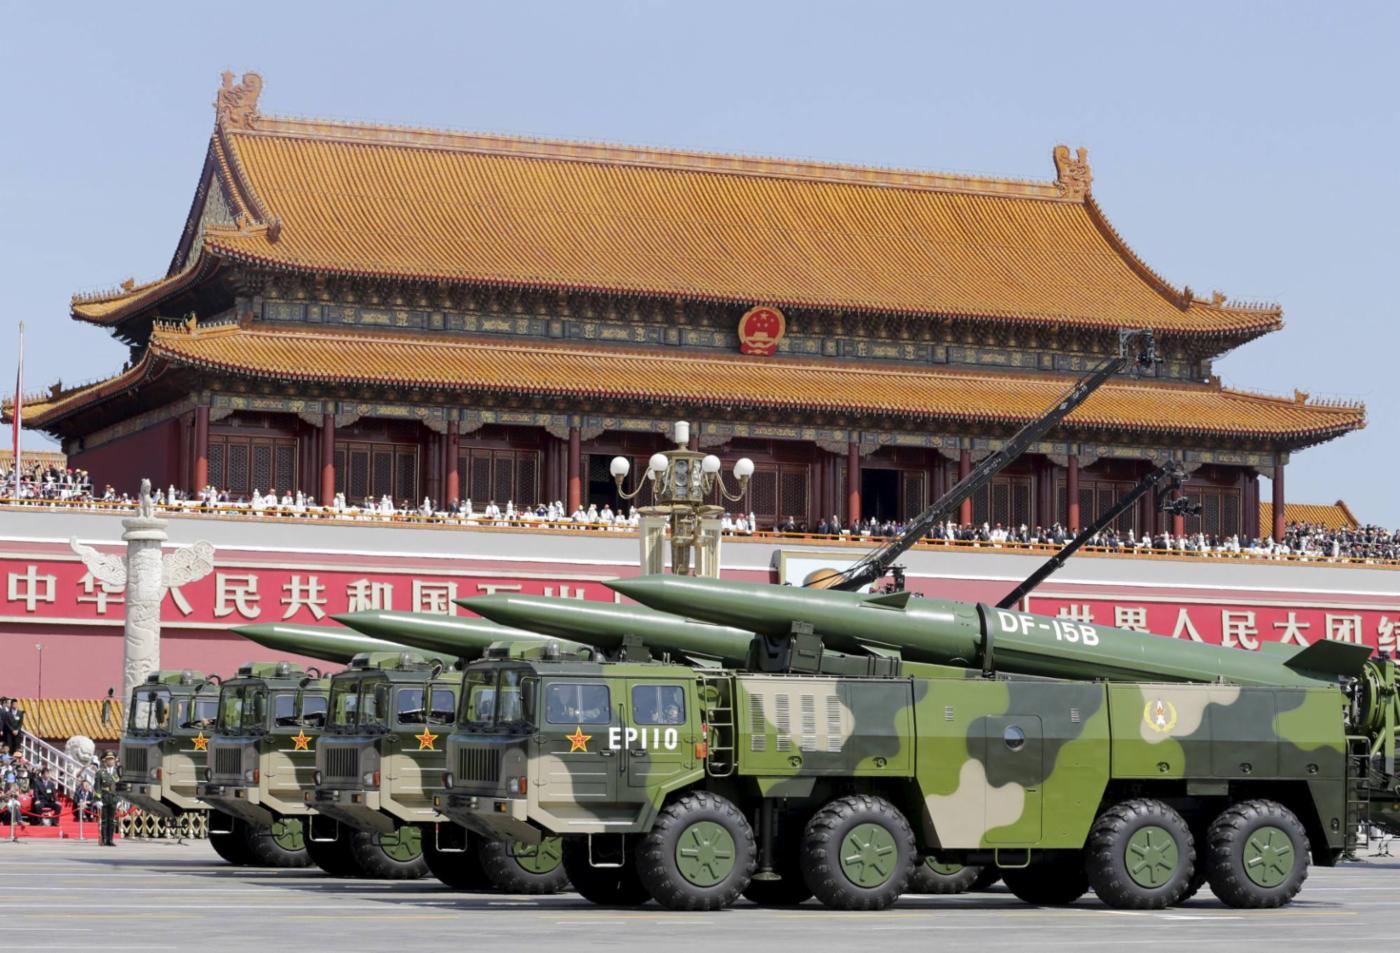  China en auge: el libro blanco sobre la defensa de Japón de 2021 sostiene que China “ha acometido una amplia y rápida mejora de su aparato militar en términos cualitativos y cuantitativos”. © Reuters
